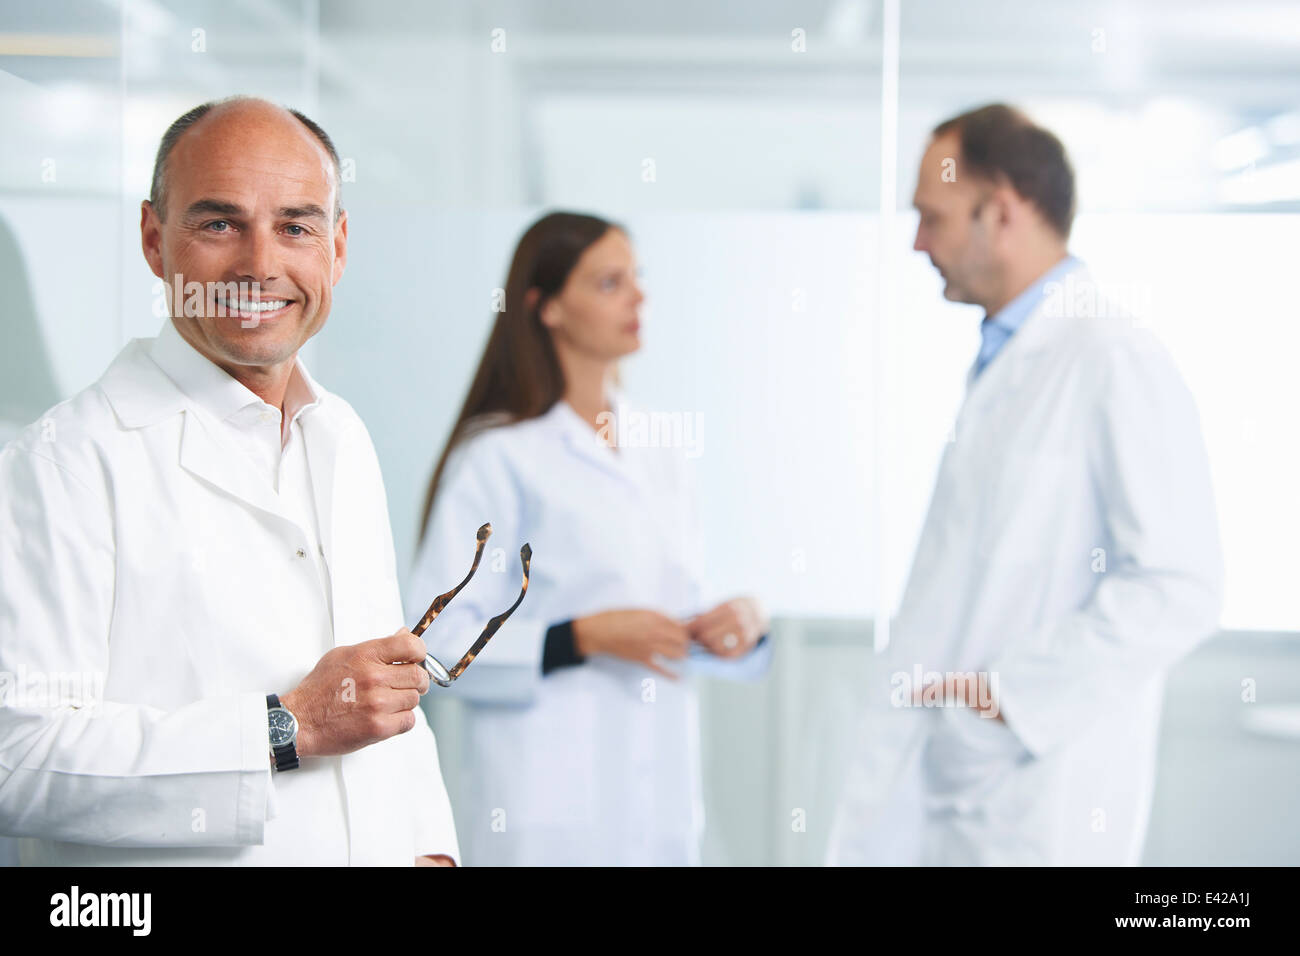 Männlichen Arzt von reflektierenden Wand, Kolleginnen und Kollegen im Hintergrund Stockfoto